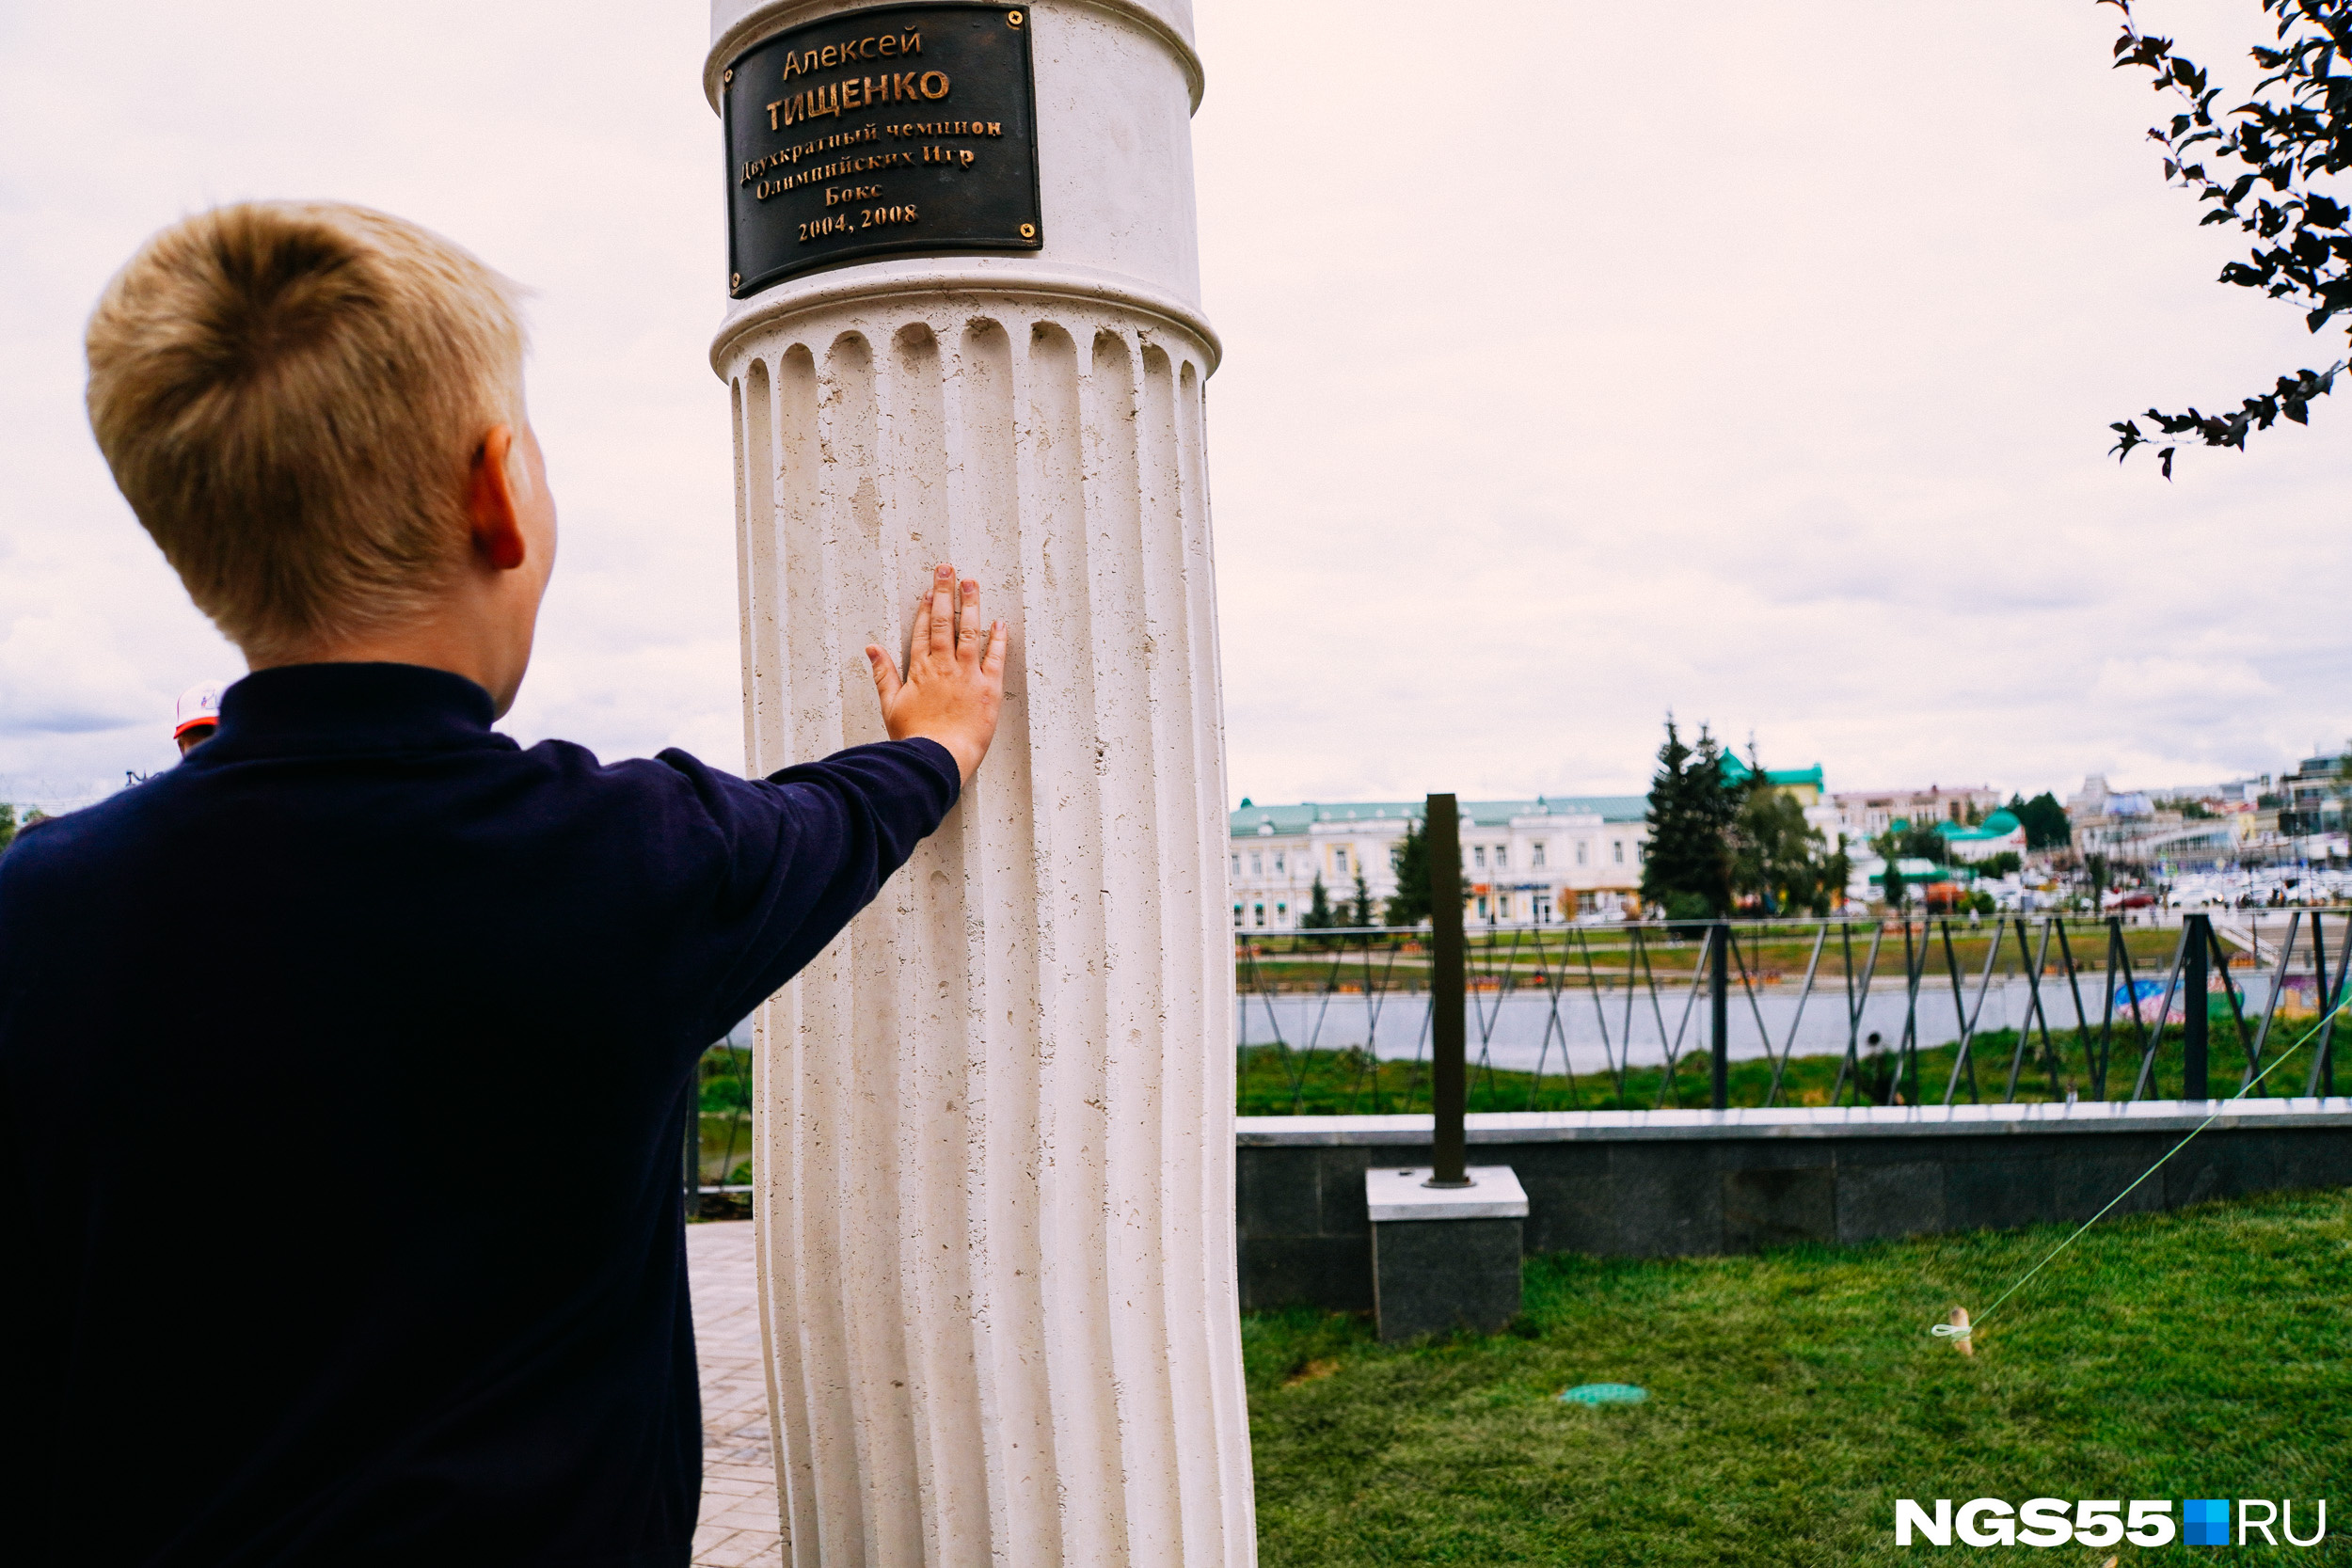 А сын Алексея Тищенко решил прикоснуться к монументу рукой, видимо, чтобы проверить устойчивость